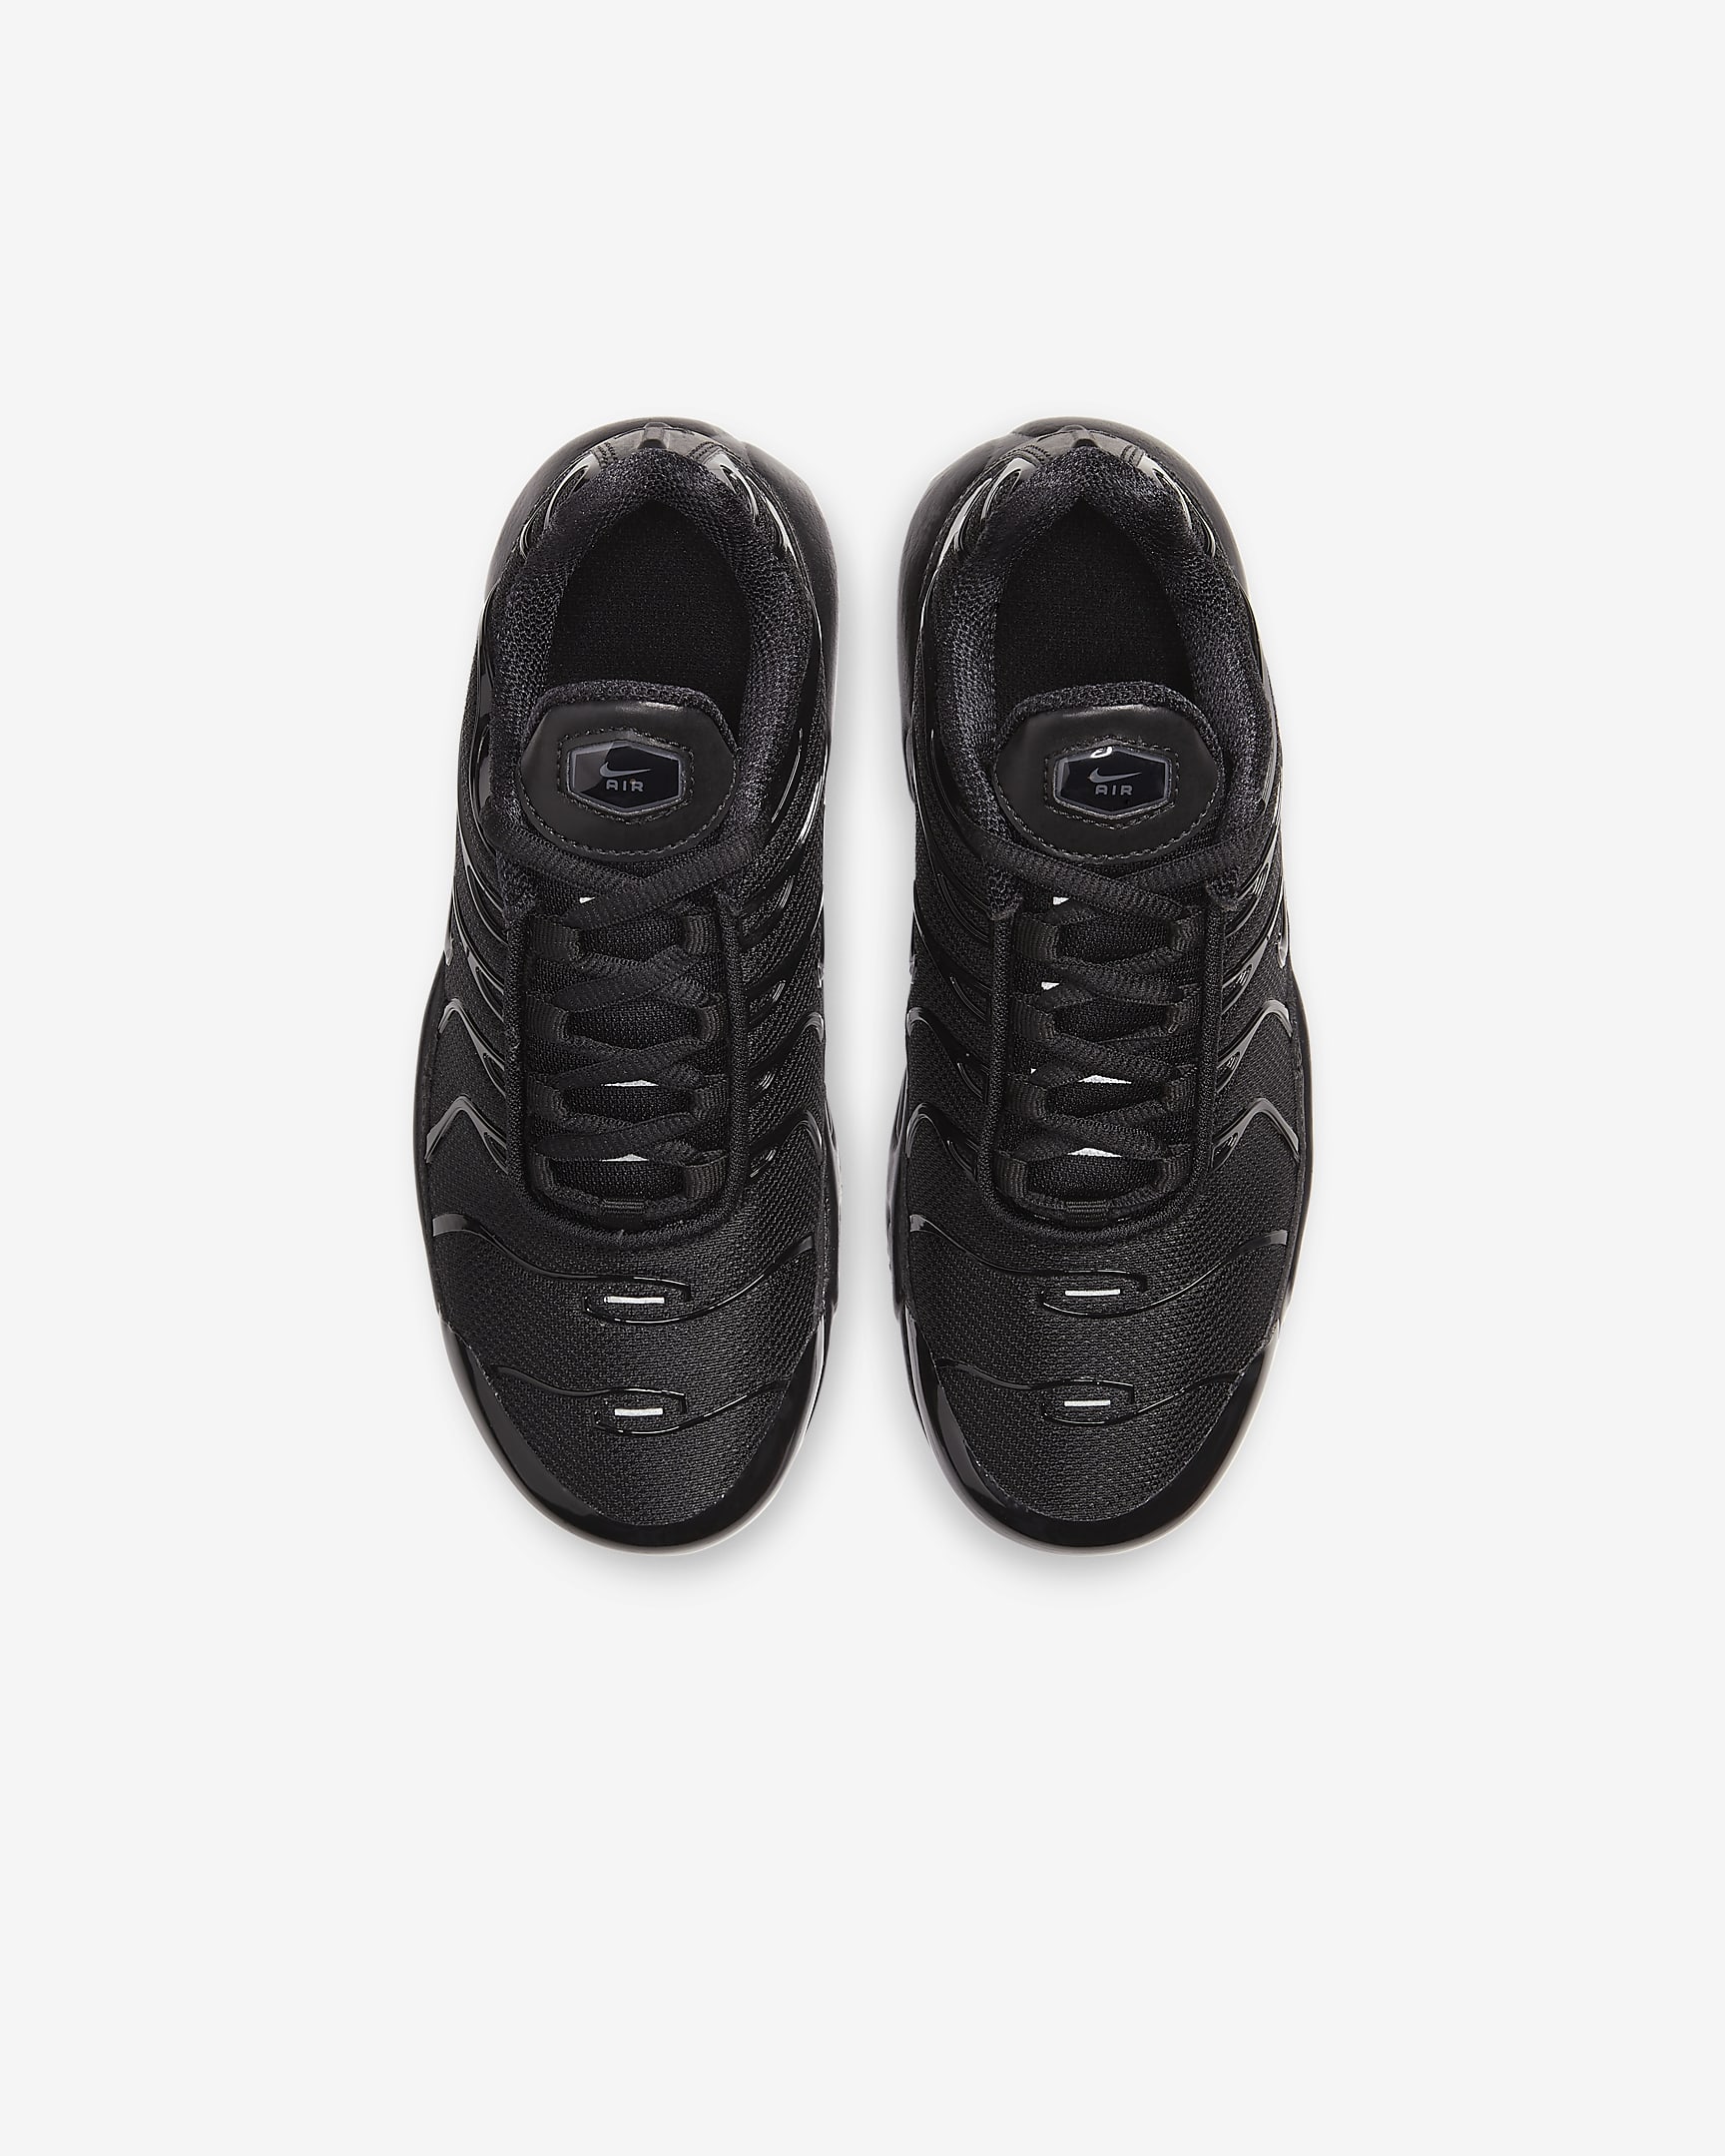 Chaussure Nike Air Max Plus pour enfant - Noir/Noir/Noir